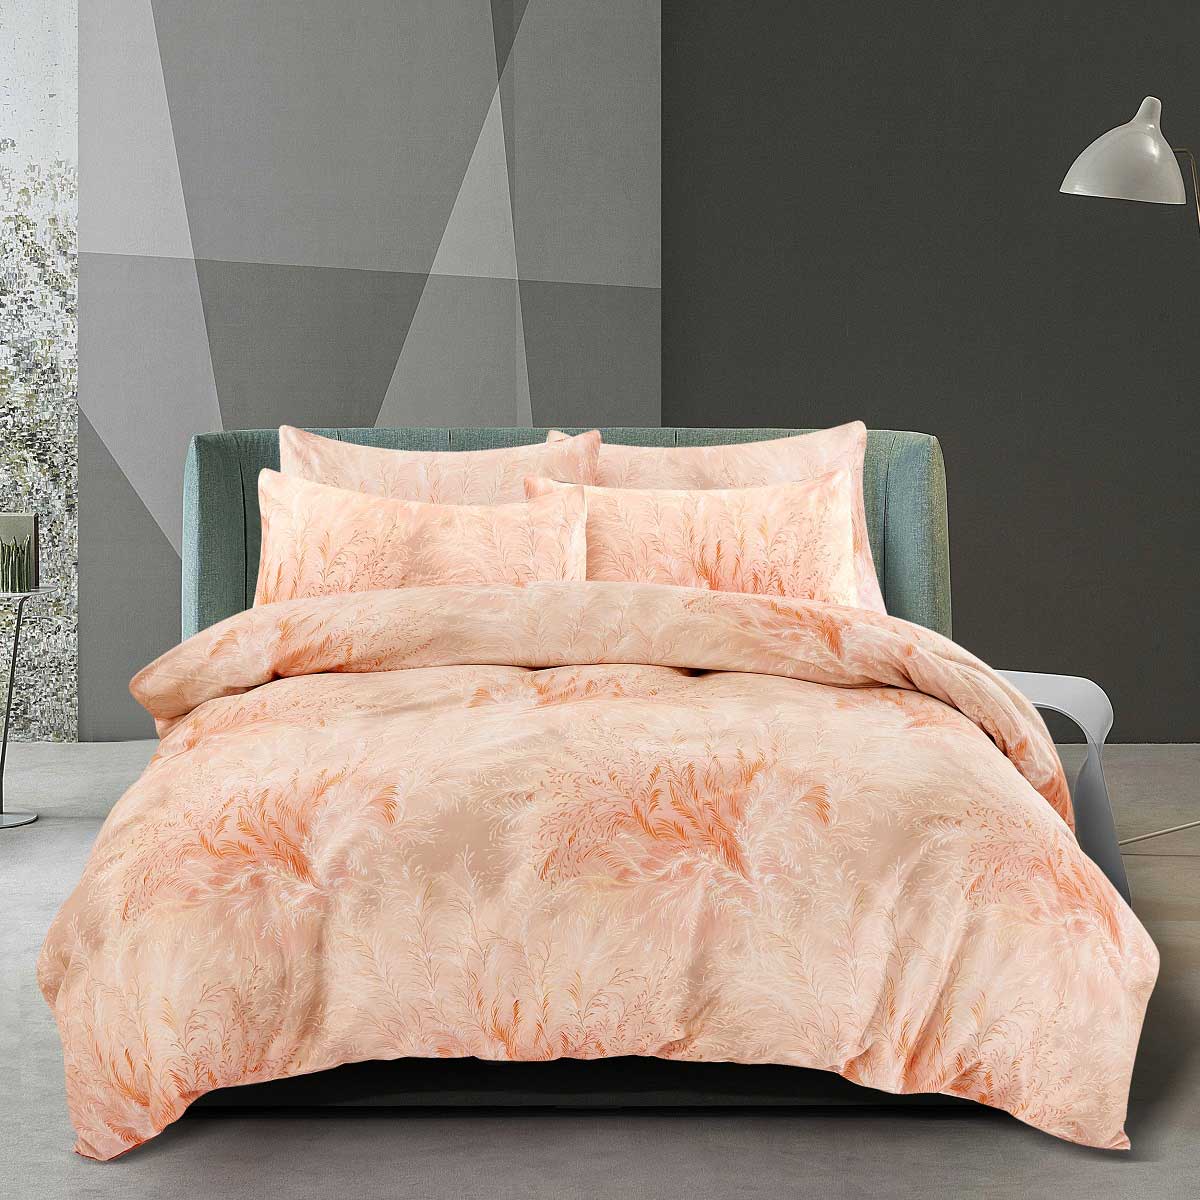 Комплект постельного белья 1,5-спальный Pappel feather saival classic колор комплект повод ошейник xs оранжевый